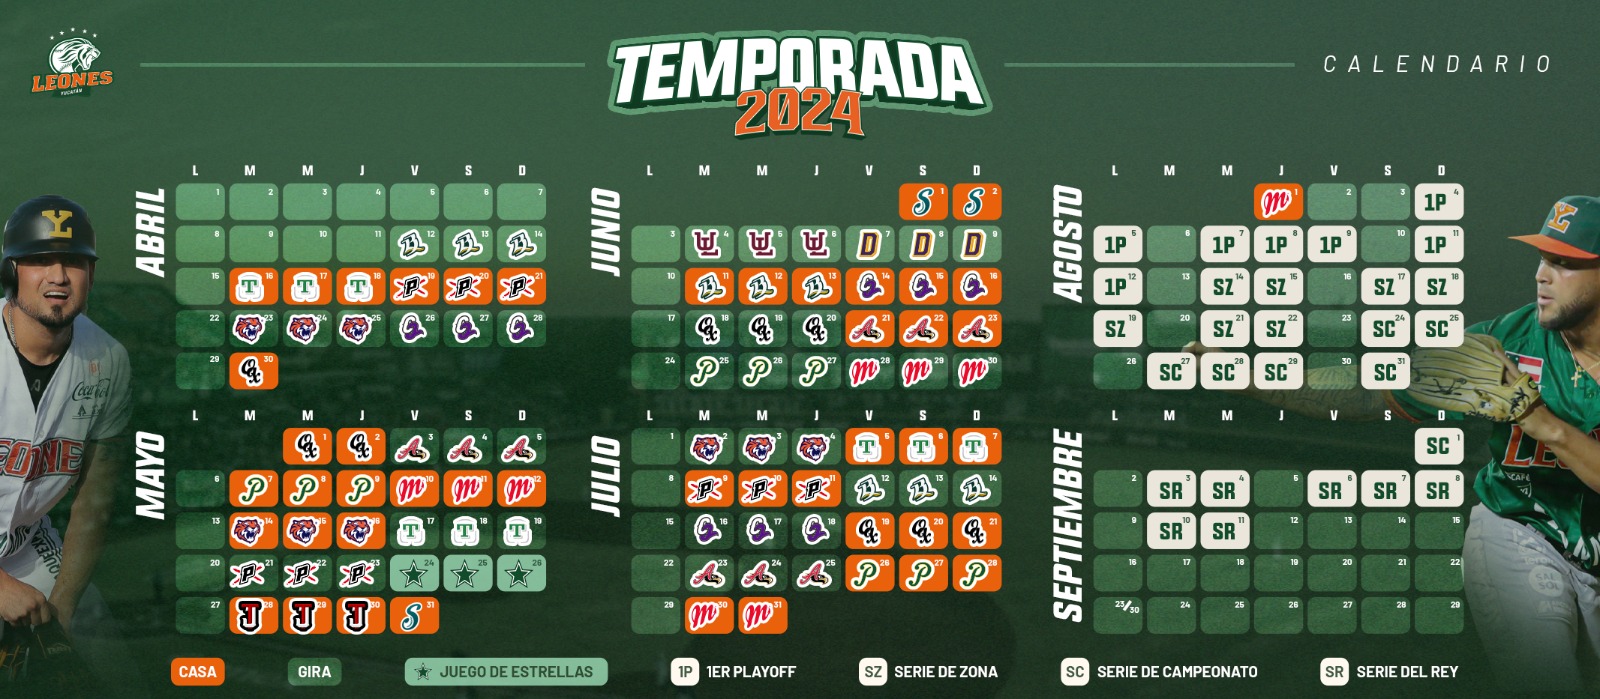 Revelan calendario de temporada 2024 de los Leones Noticias de Yucatán